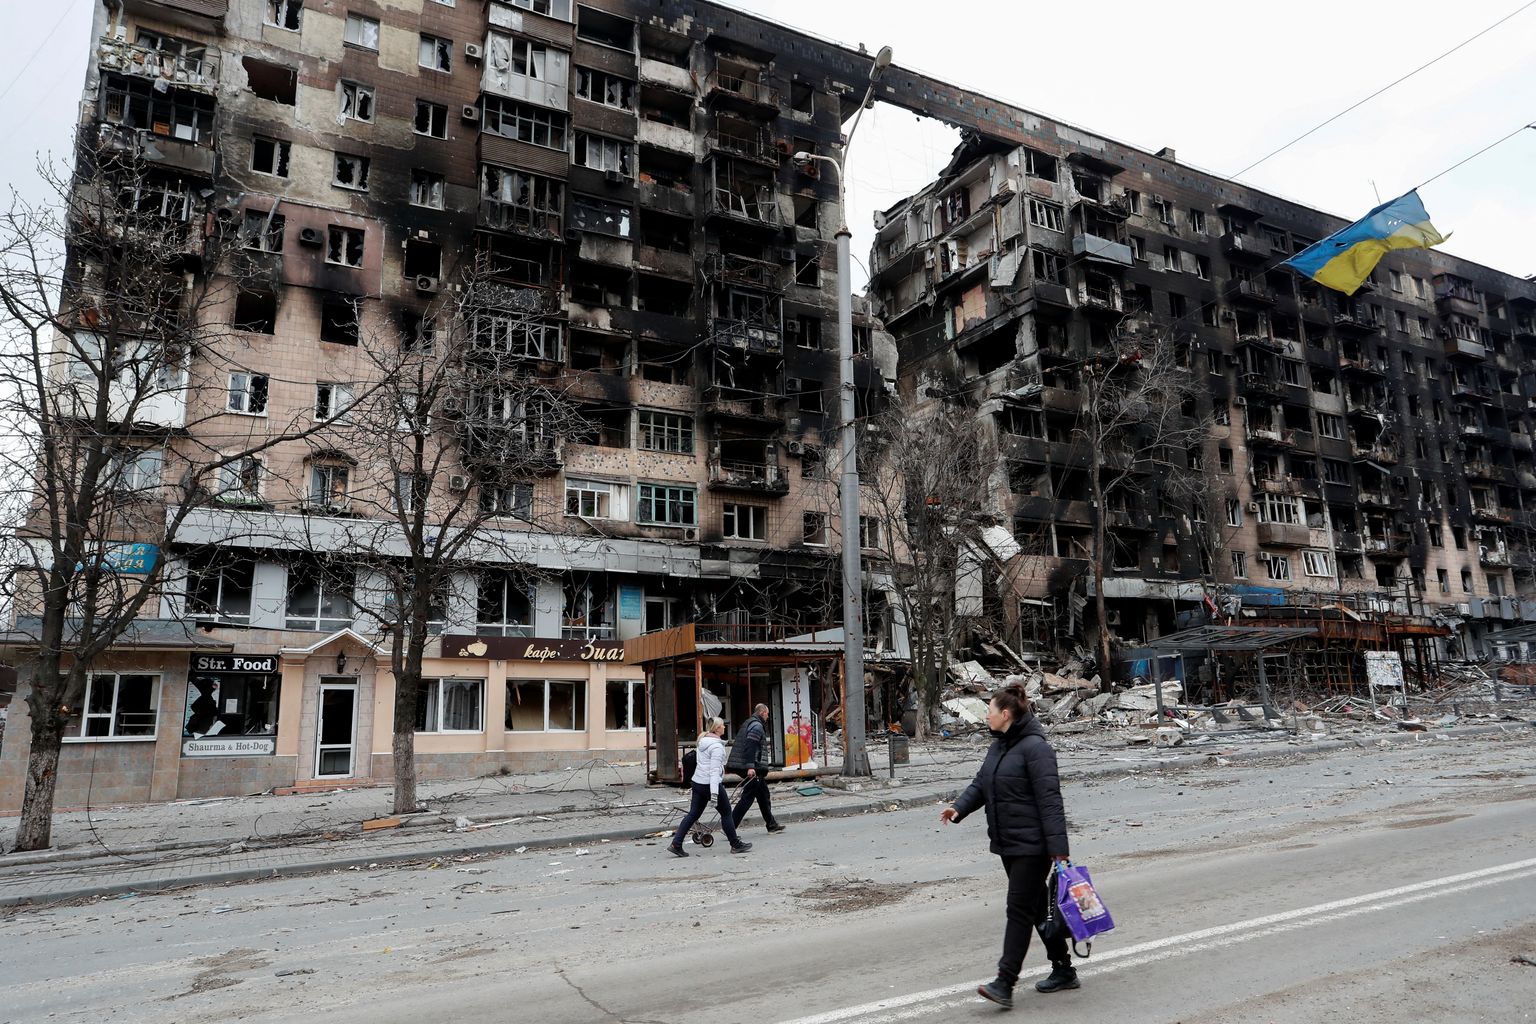 Inimesed kõndimas Ukrainas Mariupolis tänaval. Näha on sõjas kannatada saanud hooneid ja Ukraina lippu. Foto on tehtud 14. aprillil 2022